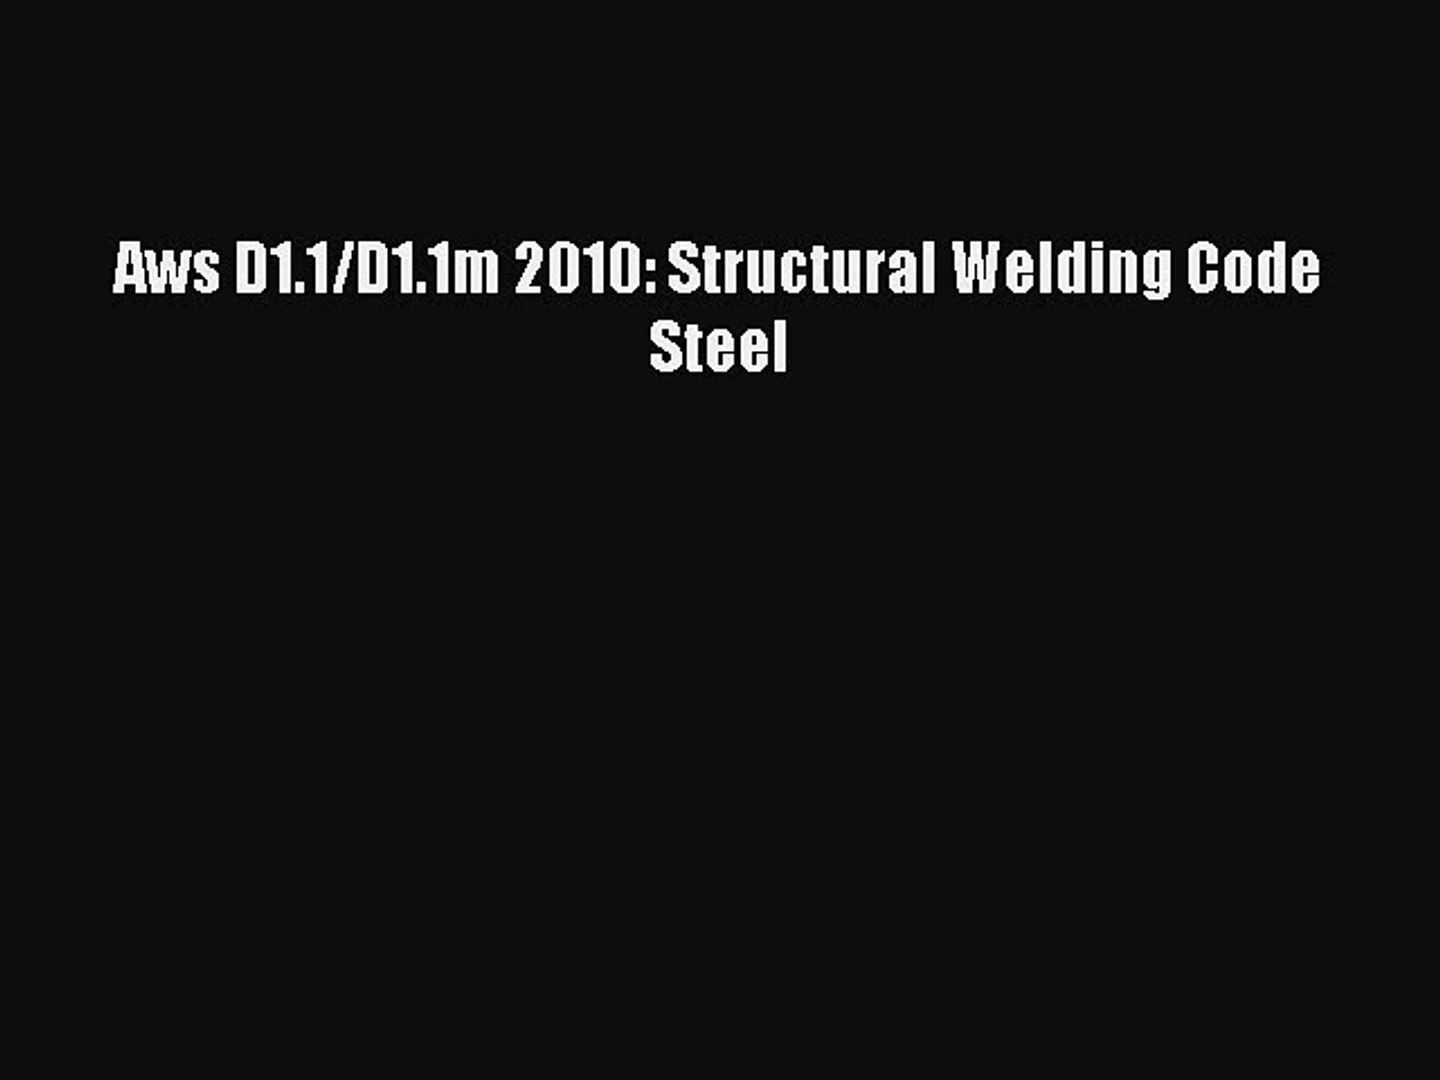 Aws d1.1 structural welding code